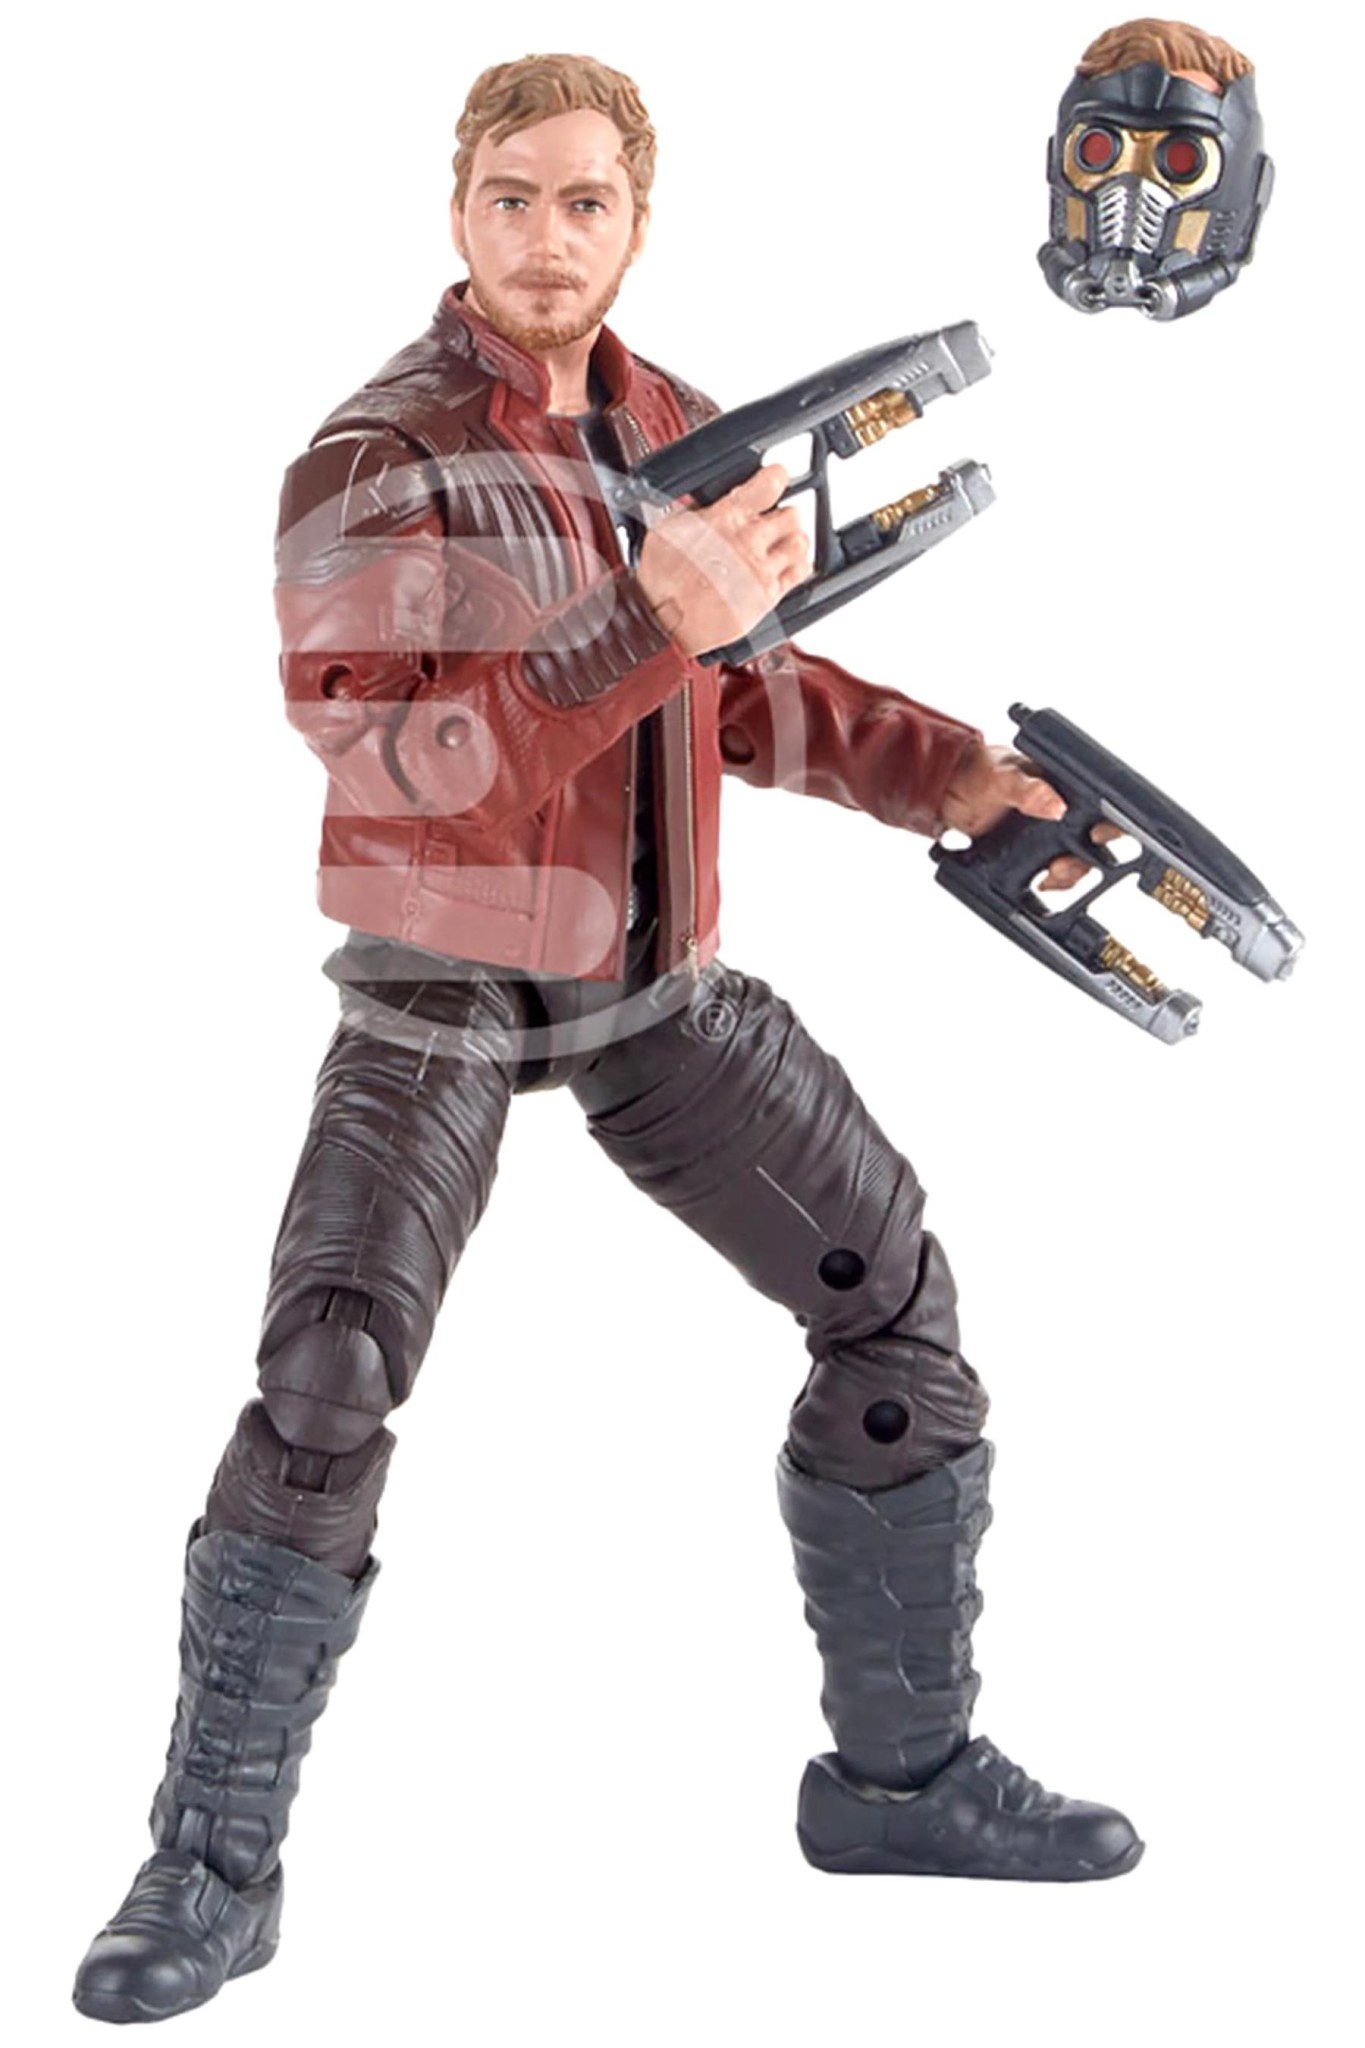 $!Revelan el personaje de Kurt Russell en “Guardianes de la Galaxia “por juguete